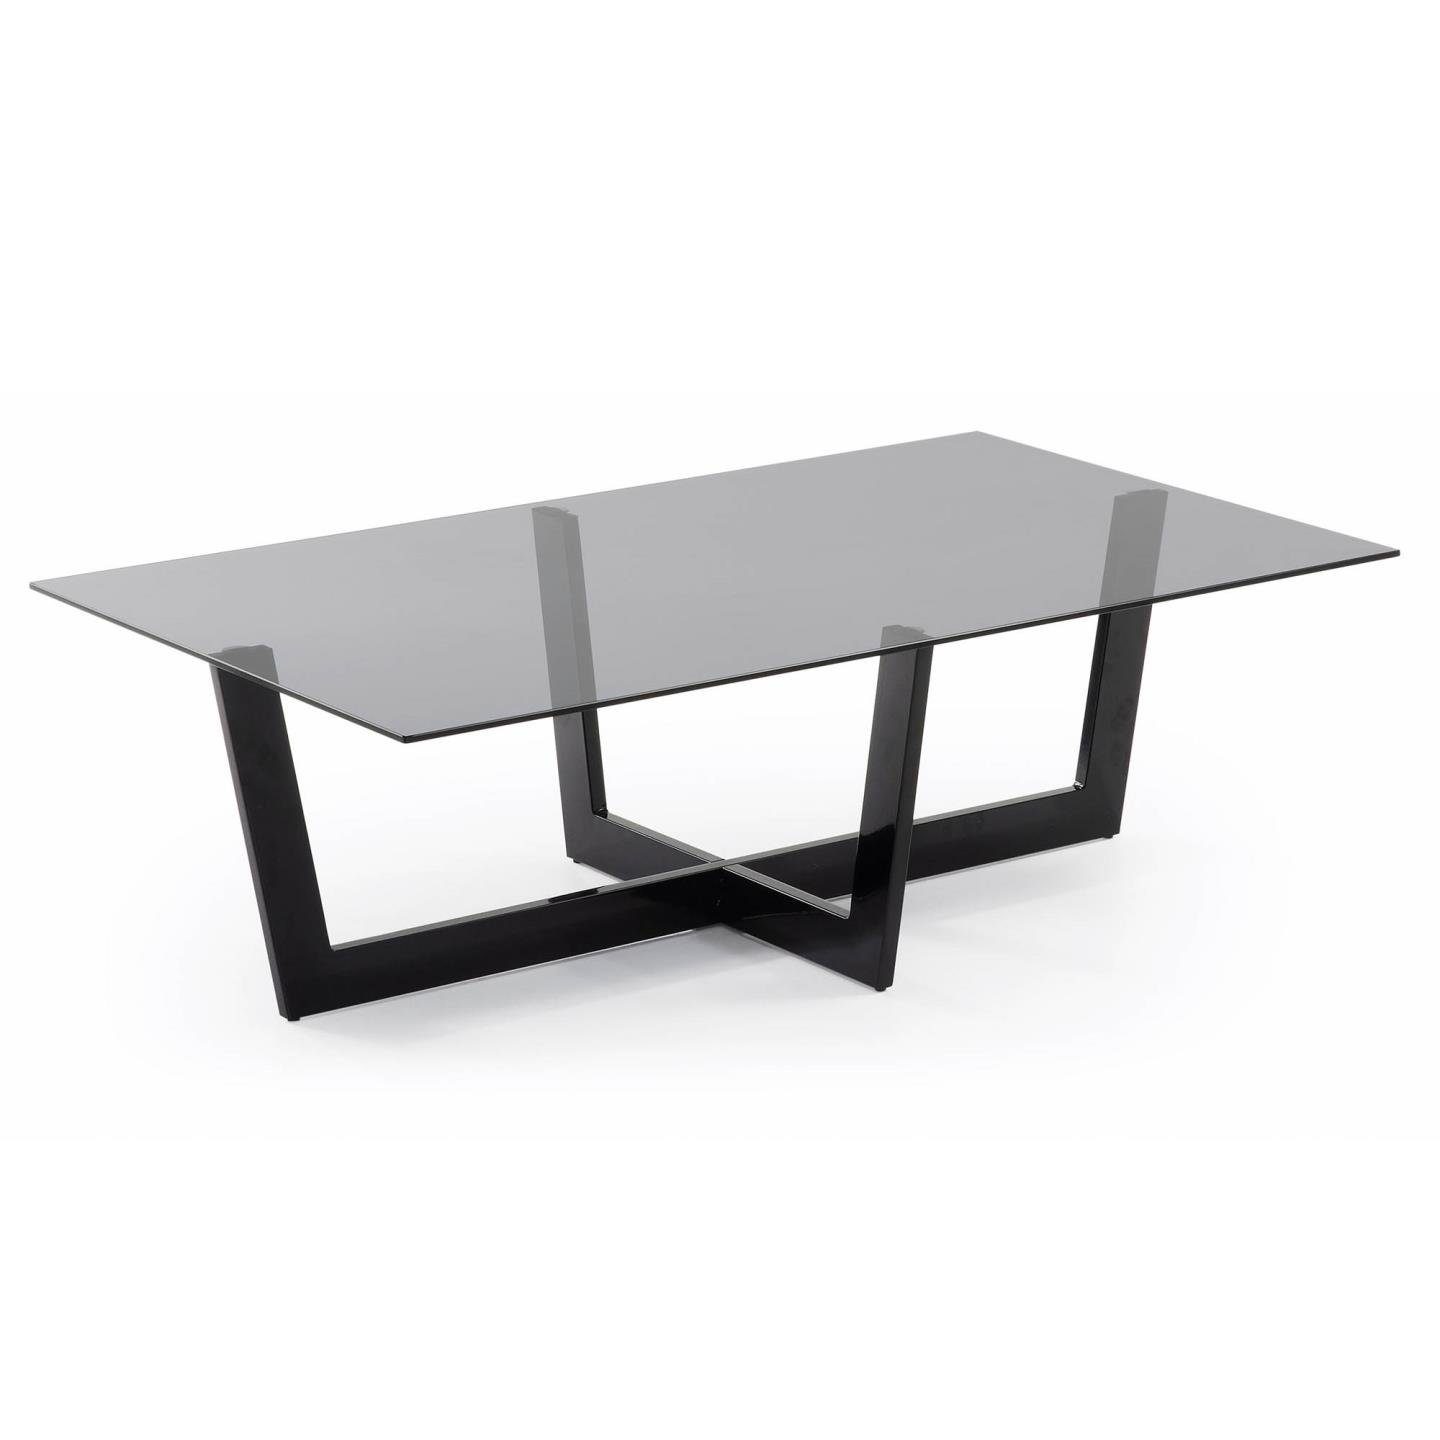 Plam Glas Couchtisch Stahlstruktur Tisch schwarz Natur24 Beistelltisch 120x70cm